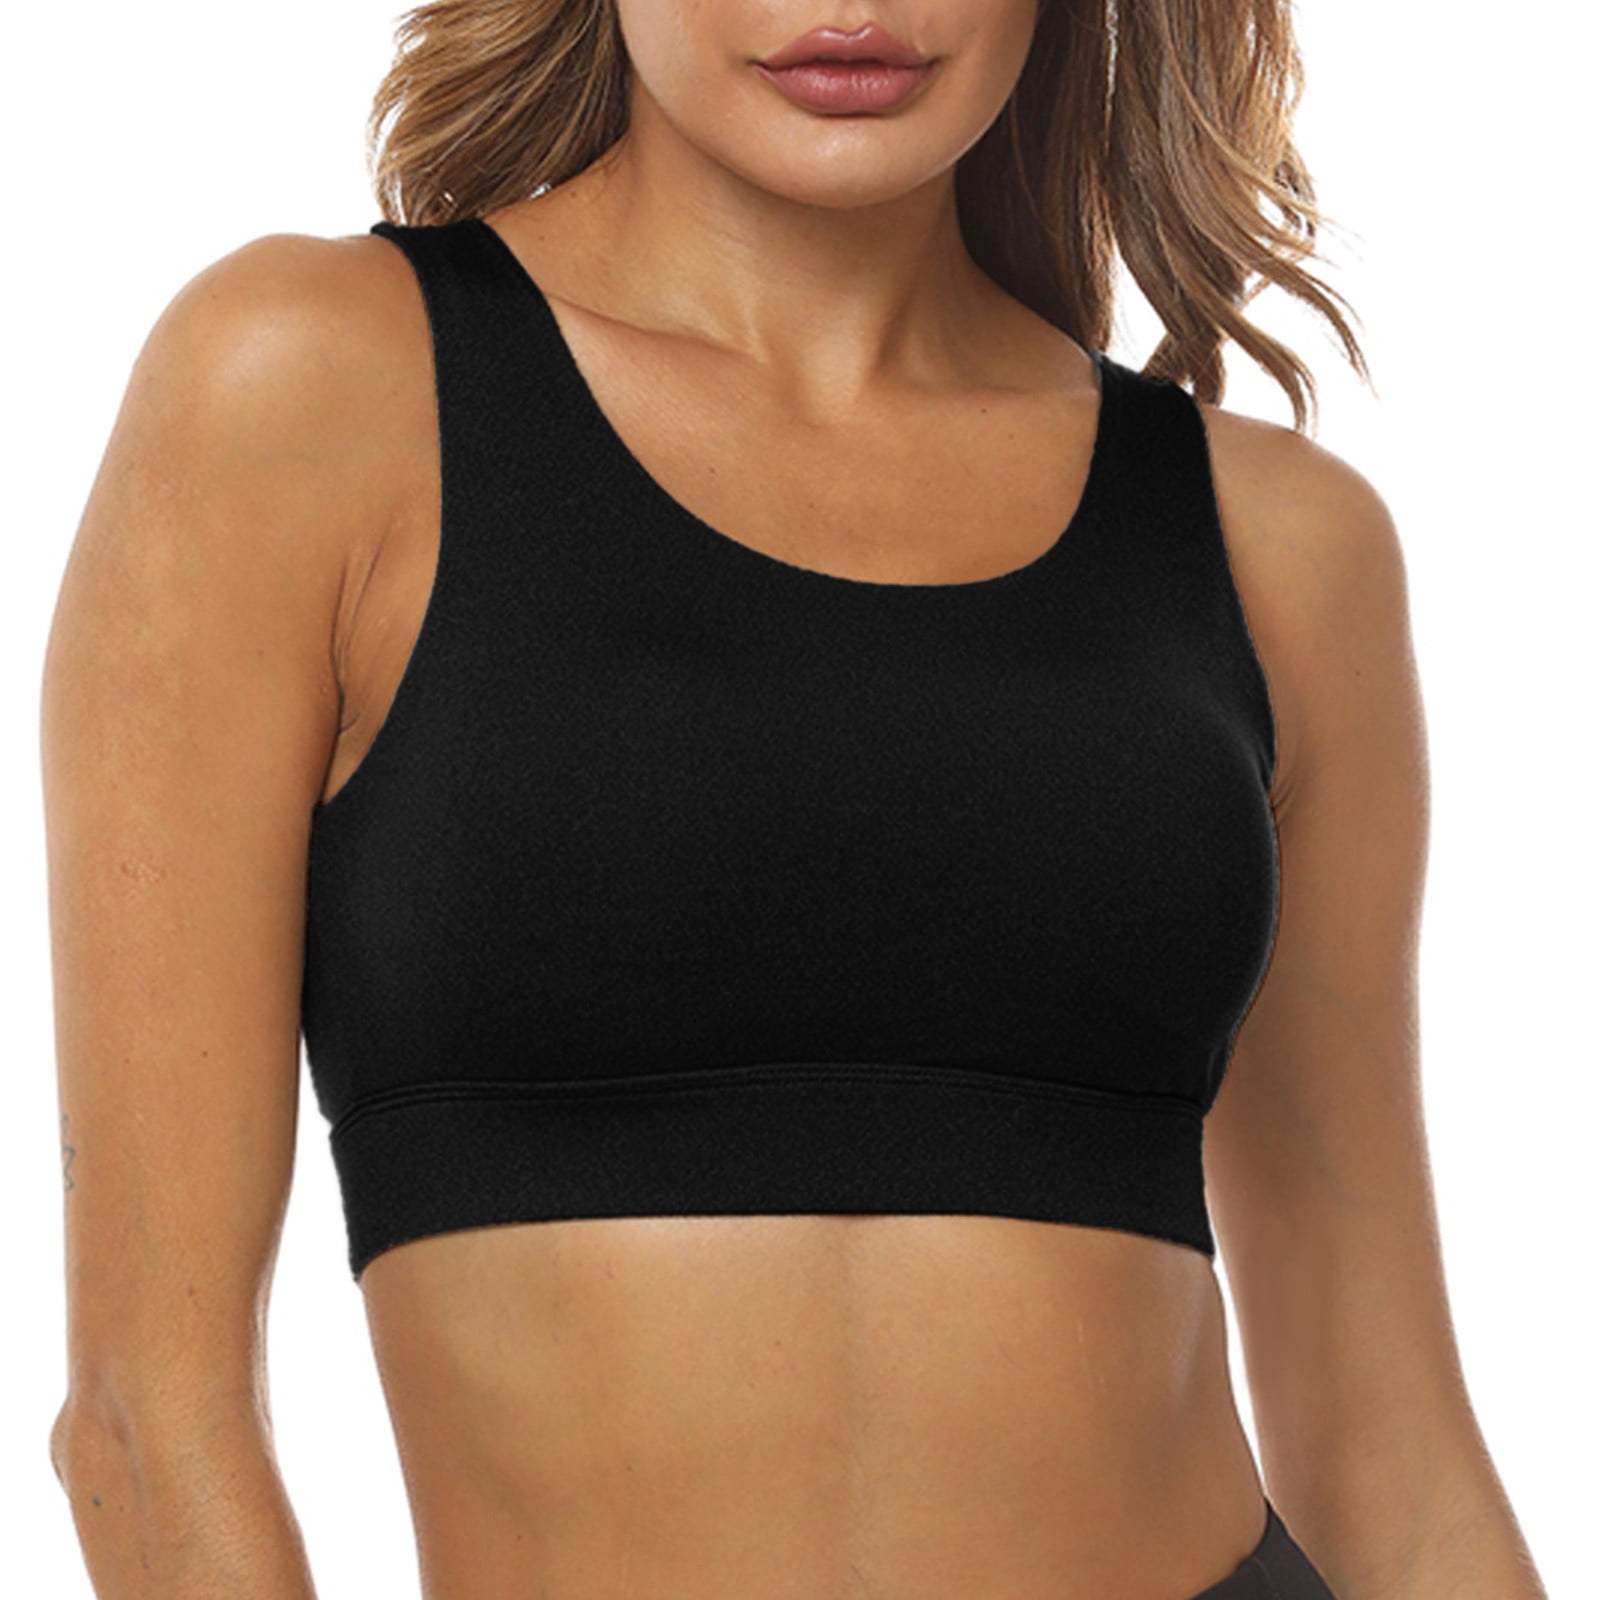 Eashery Plus Size Sports Bras for Women Women's Comfort Revolution  Full-Coverage Wireless Bra, Foam Wirefree T-Shirt Bra Black Large 